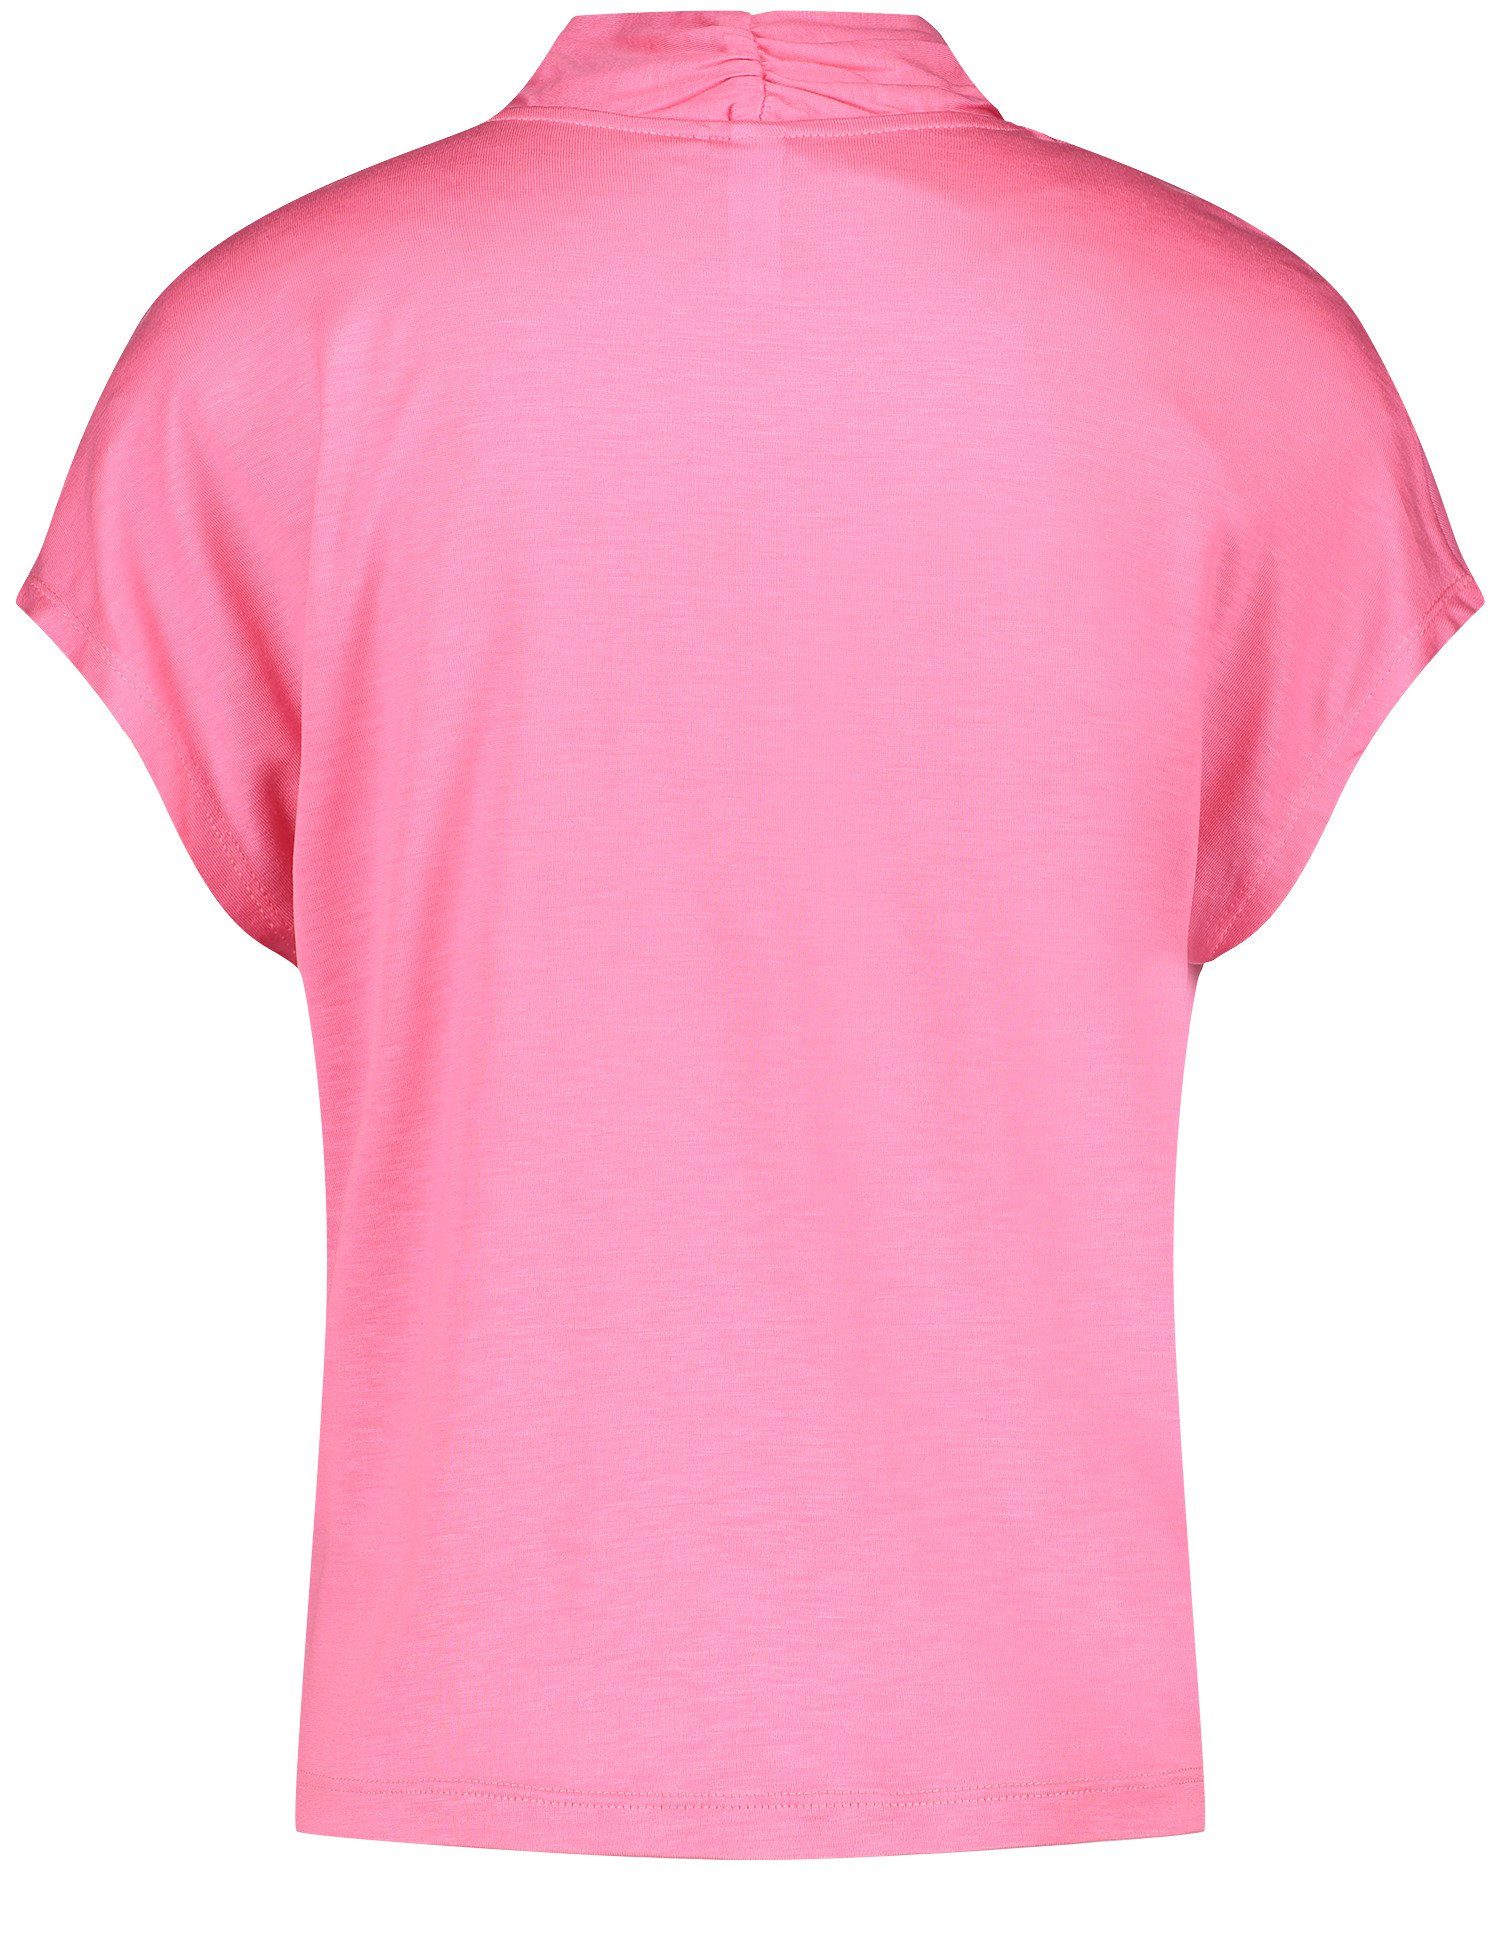 GERRY Schultern überschnittenen Pink mit Kurzarmshirt Kurzarmshirt Soft WEBER